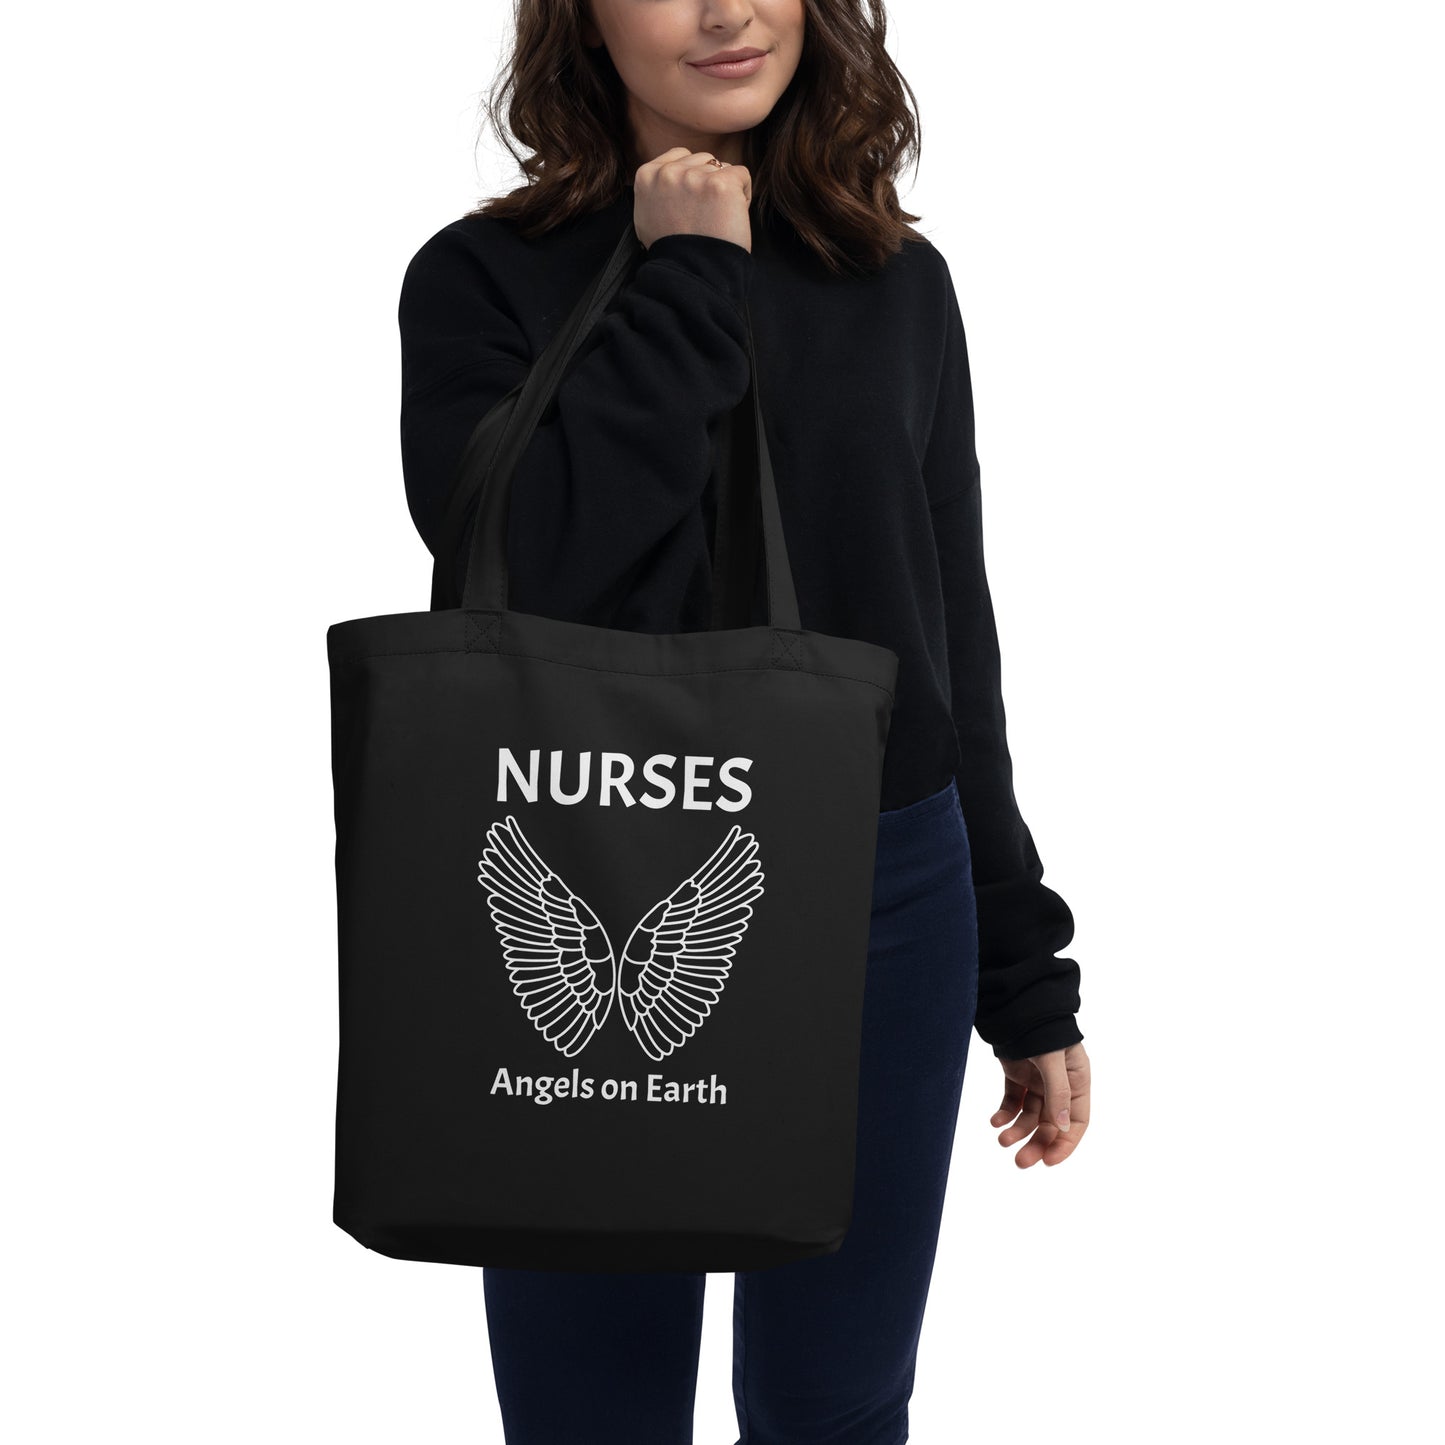 Nurses are Angels Tote Bag